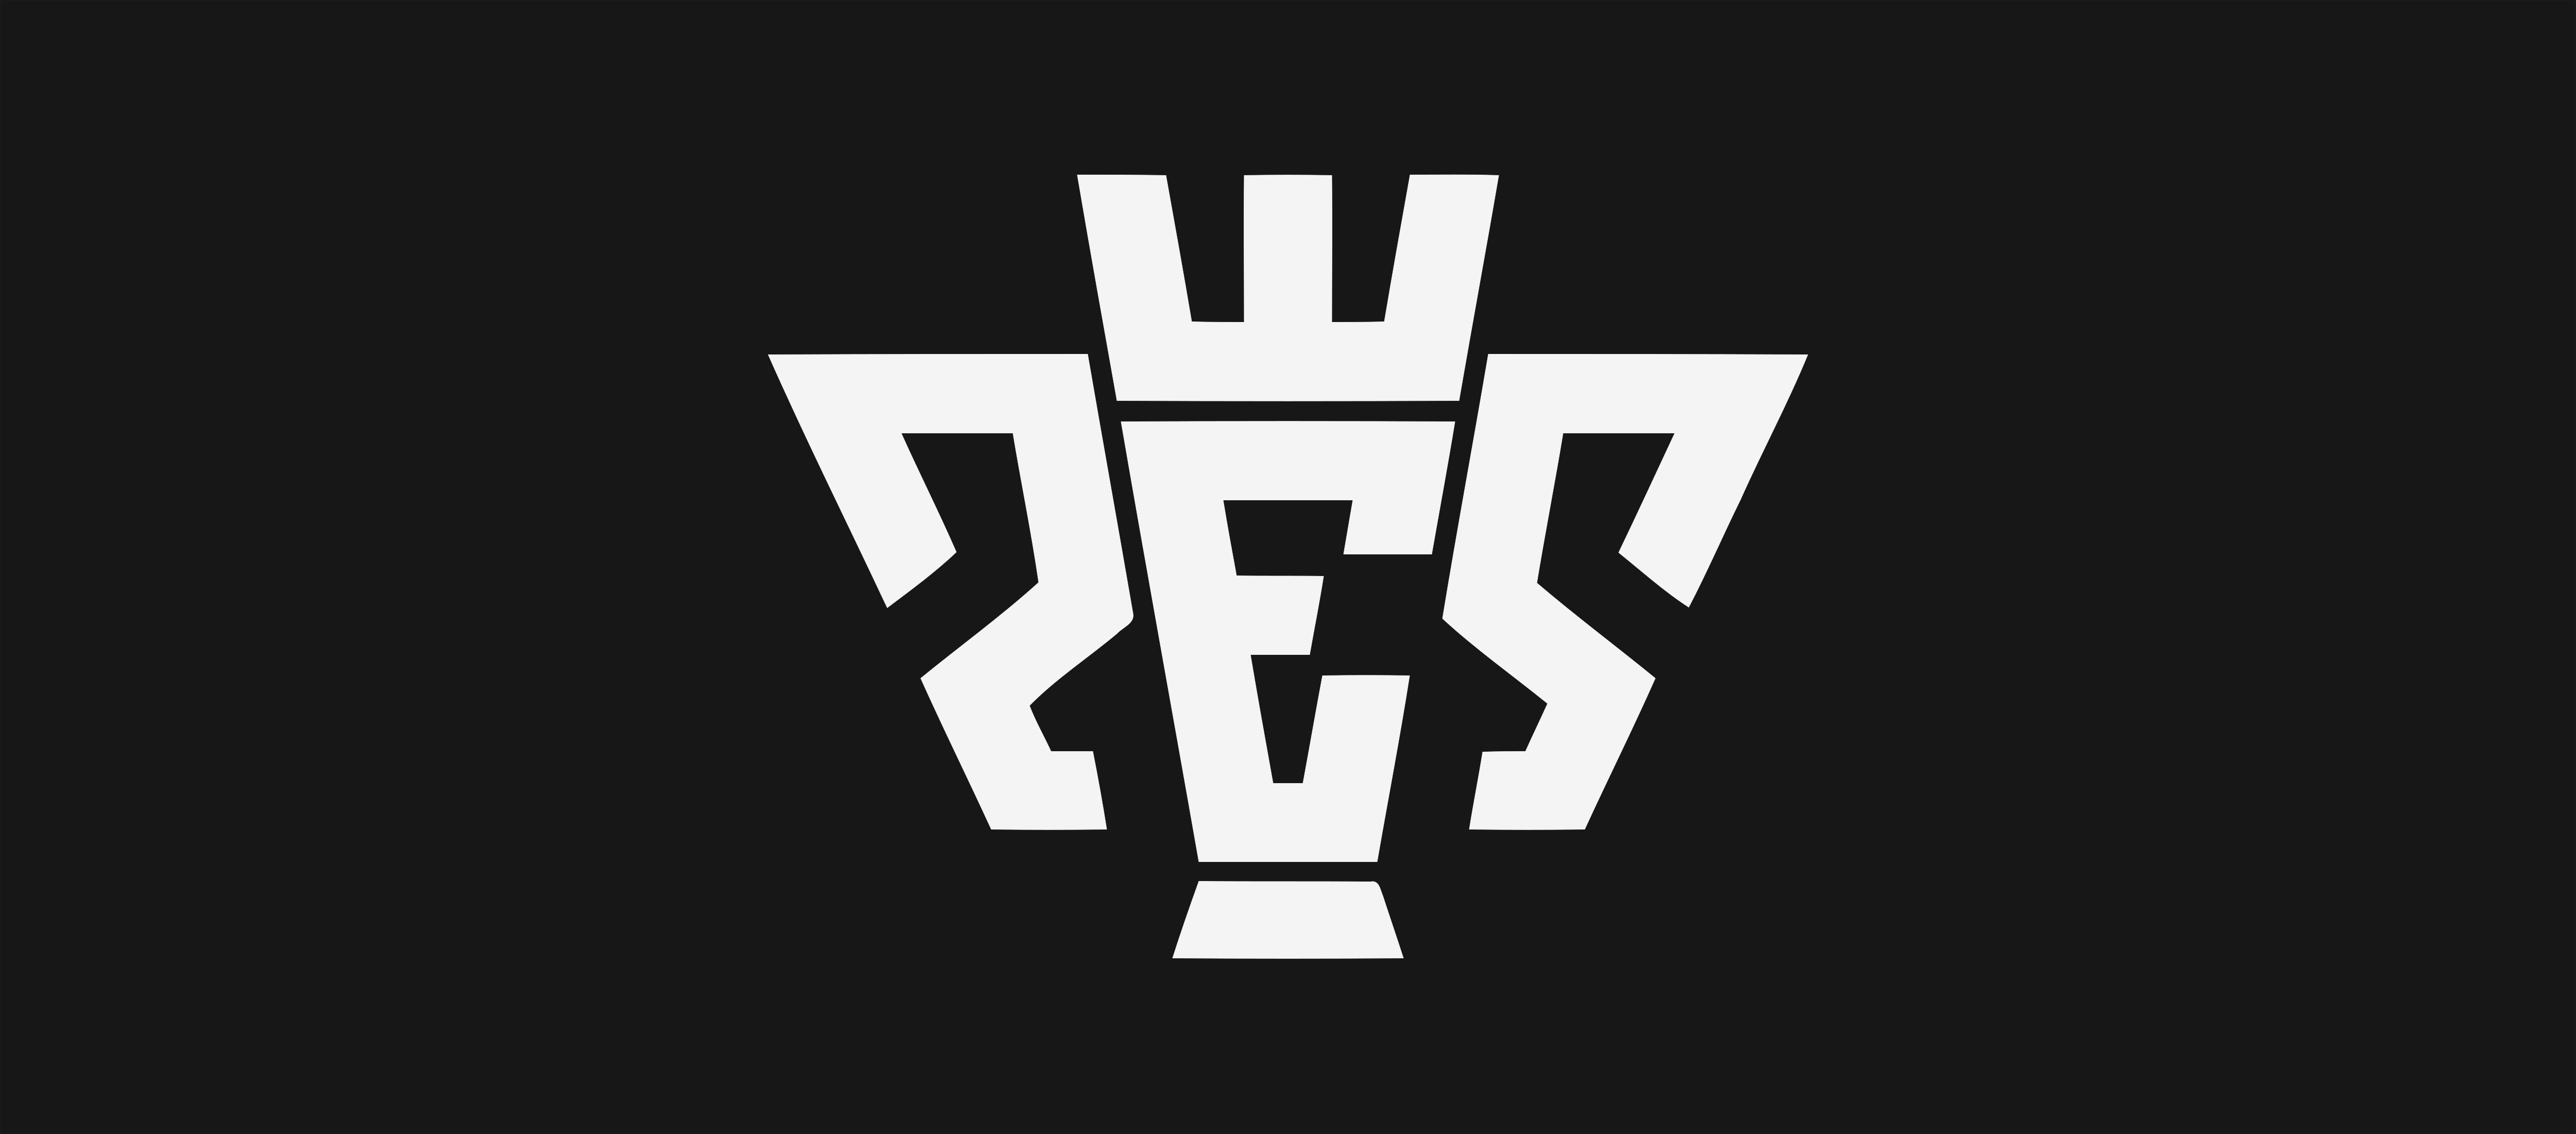 PES – Logos Download